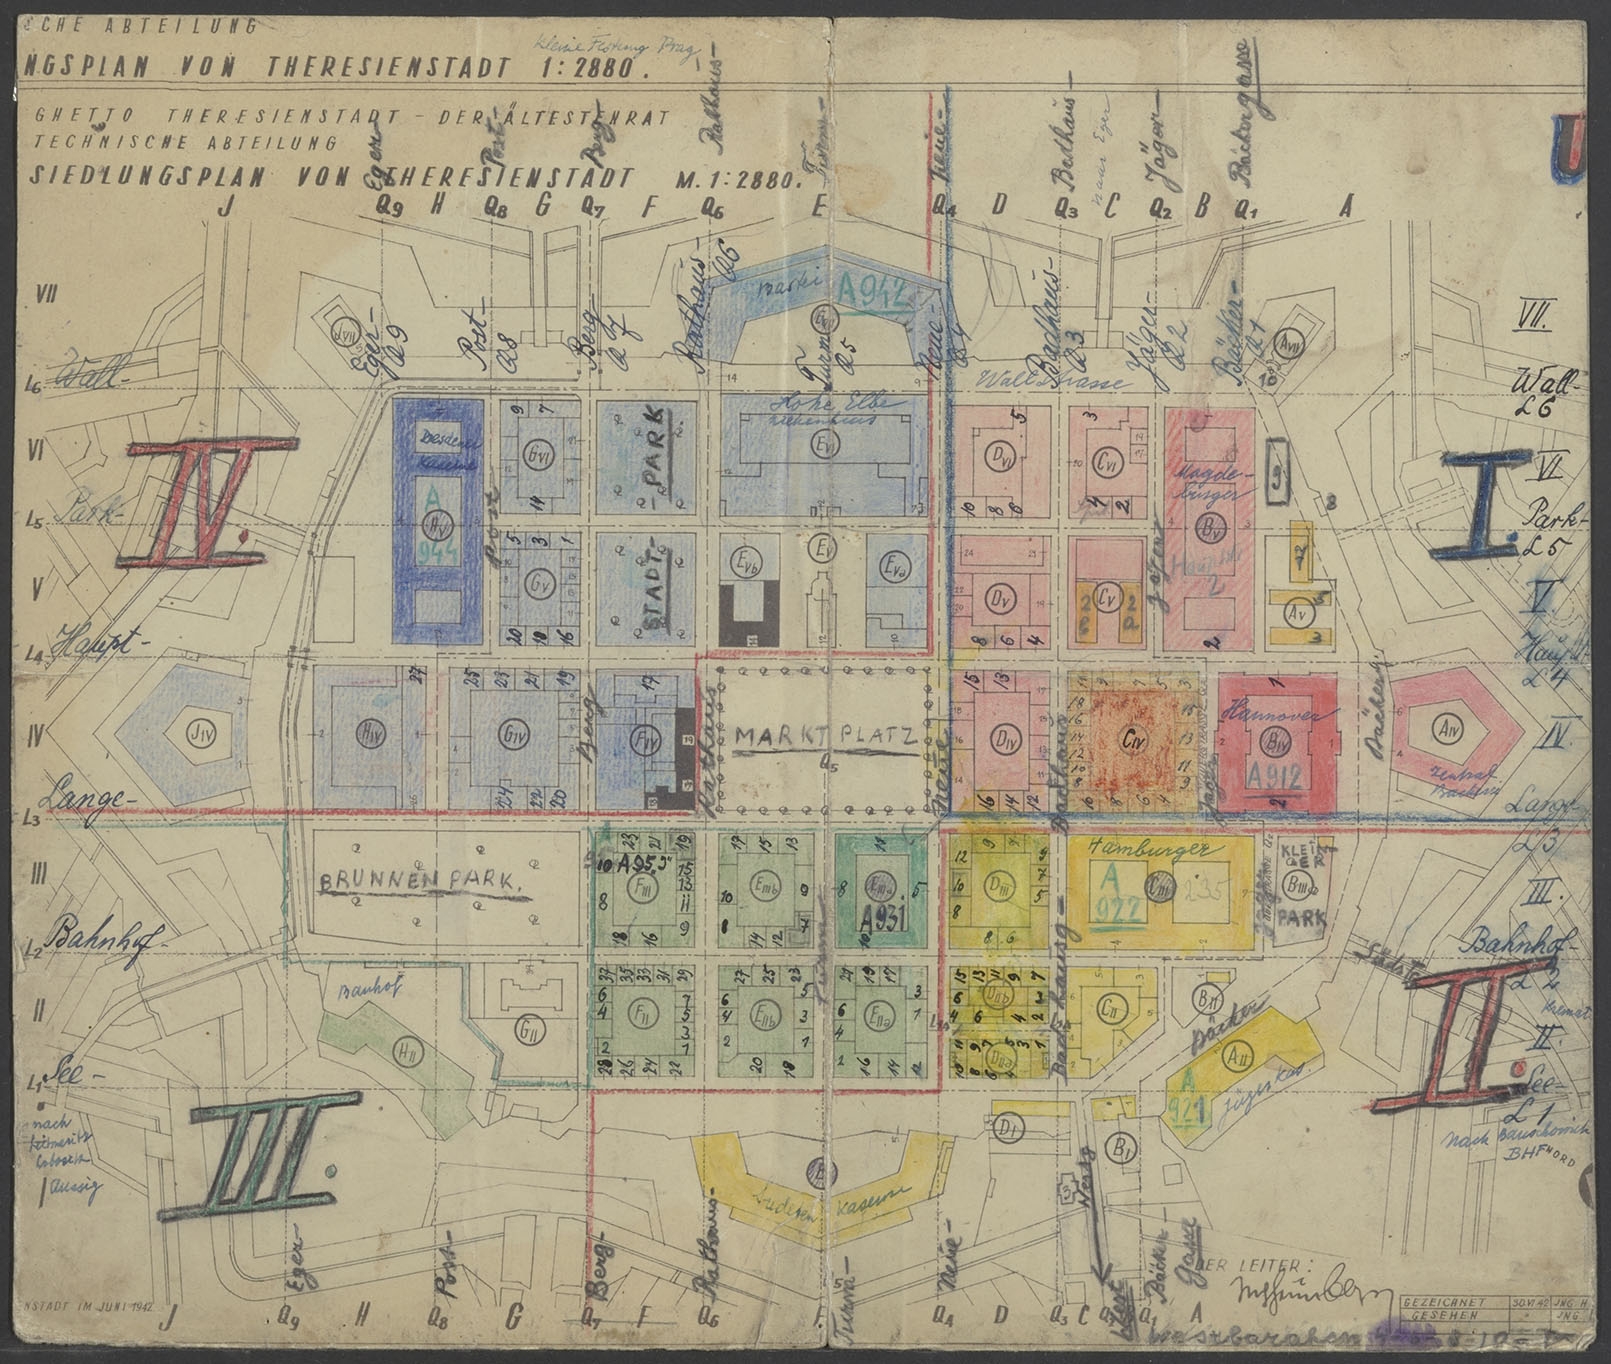 Getekende plattegrond van Theresienstadt, uit het archief van Louis Schaap.